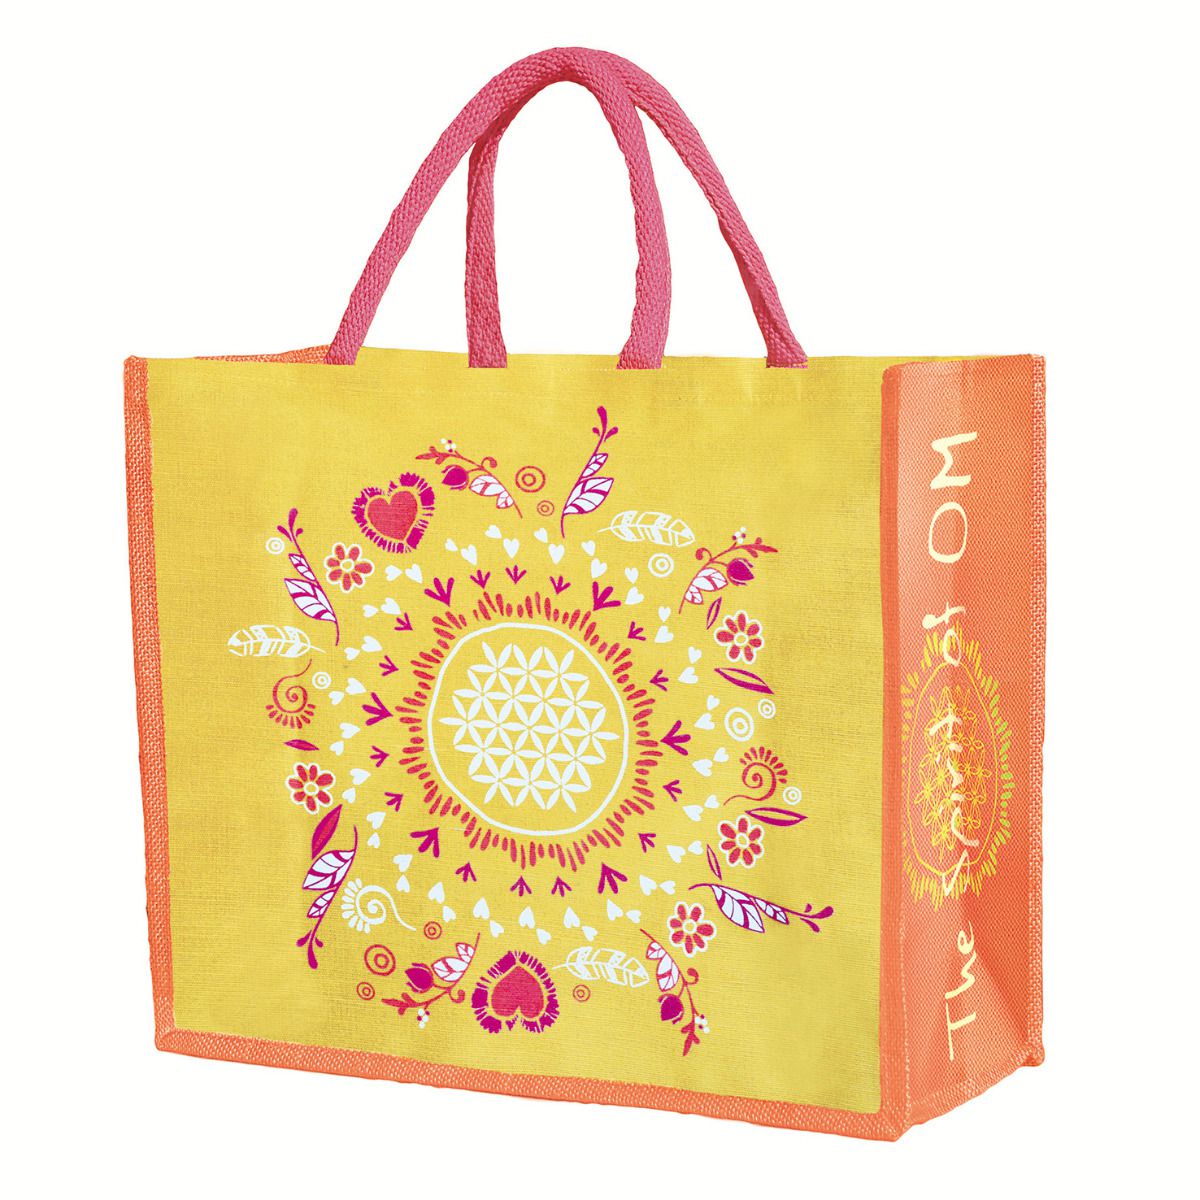 The Spirit of OM nákupní jutová taška s květem života - žluto-oranžová